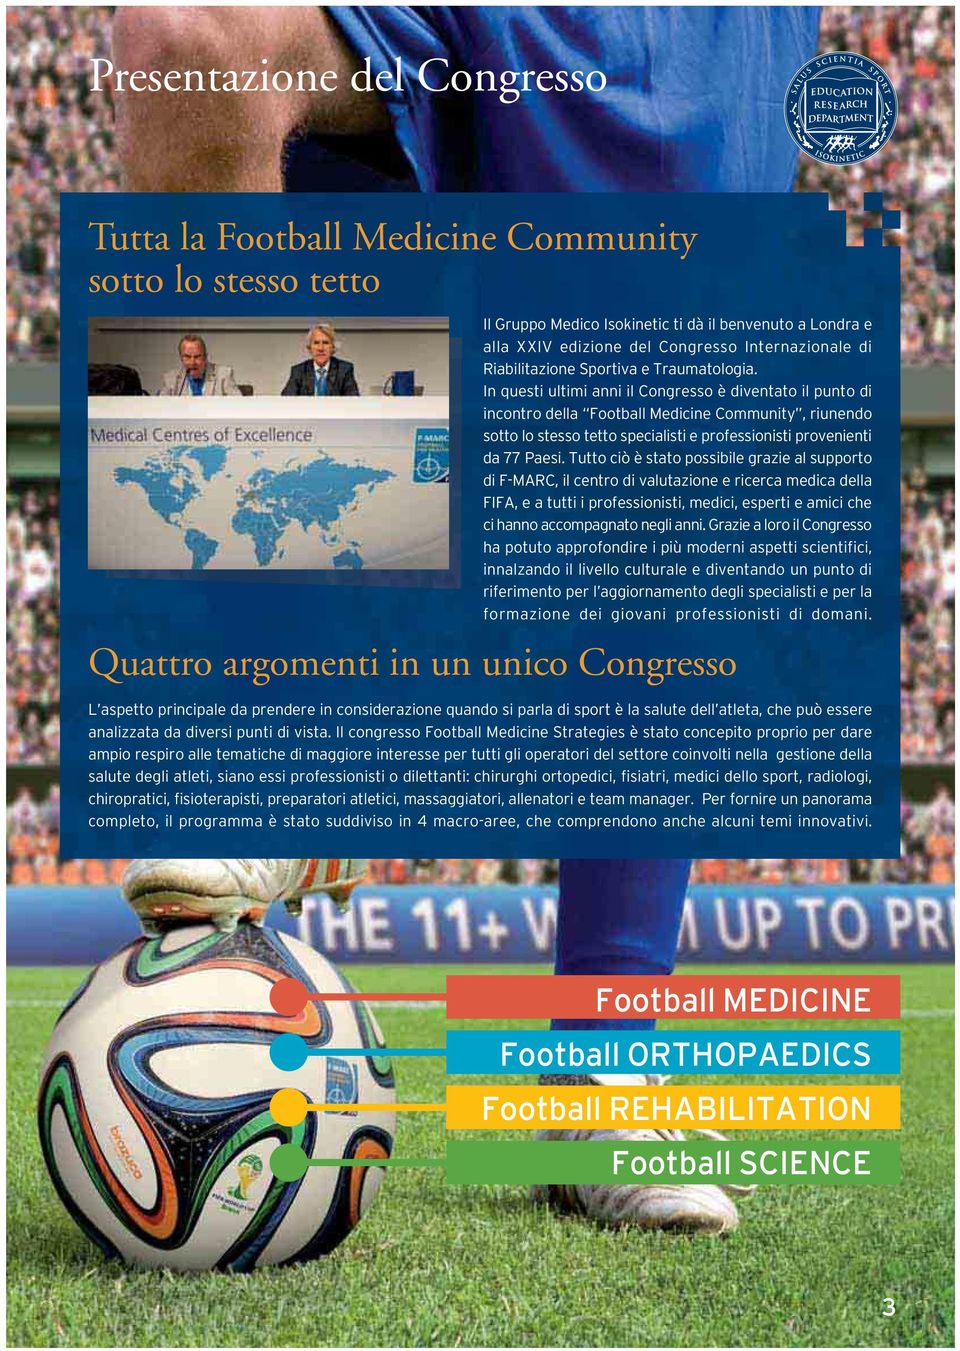 In questi ultimi anni il Congresso è diventato il punto di incontro della Football Medicine Community, riunendo sotto lo stesso tetto specialisti e professionisti provenienti da 77 Paesi.